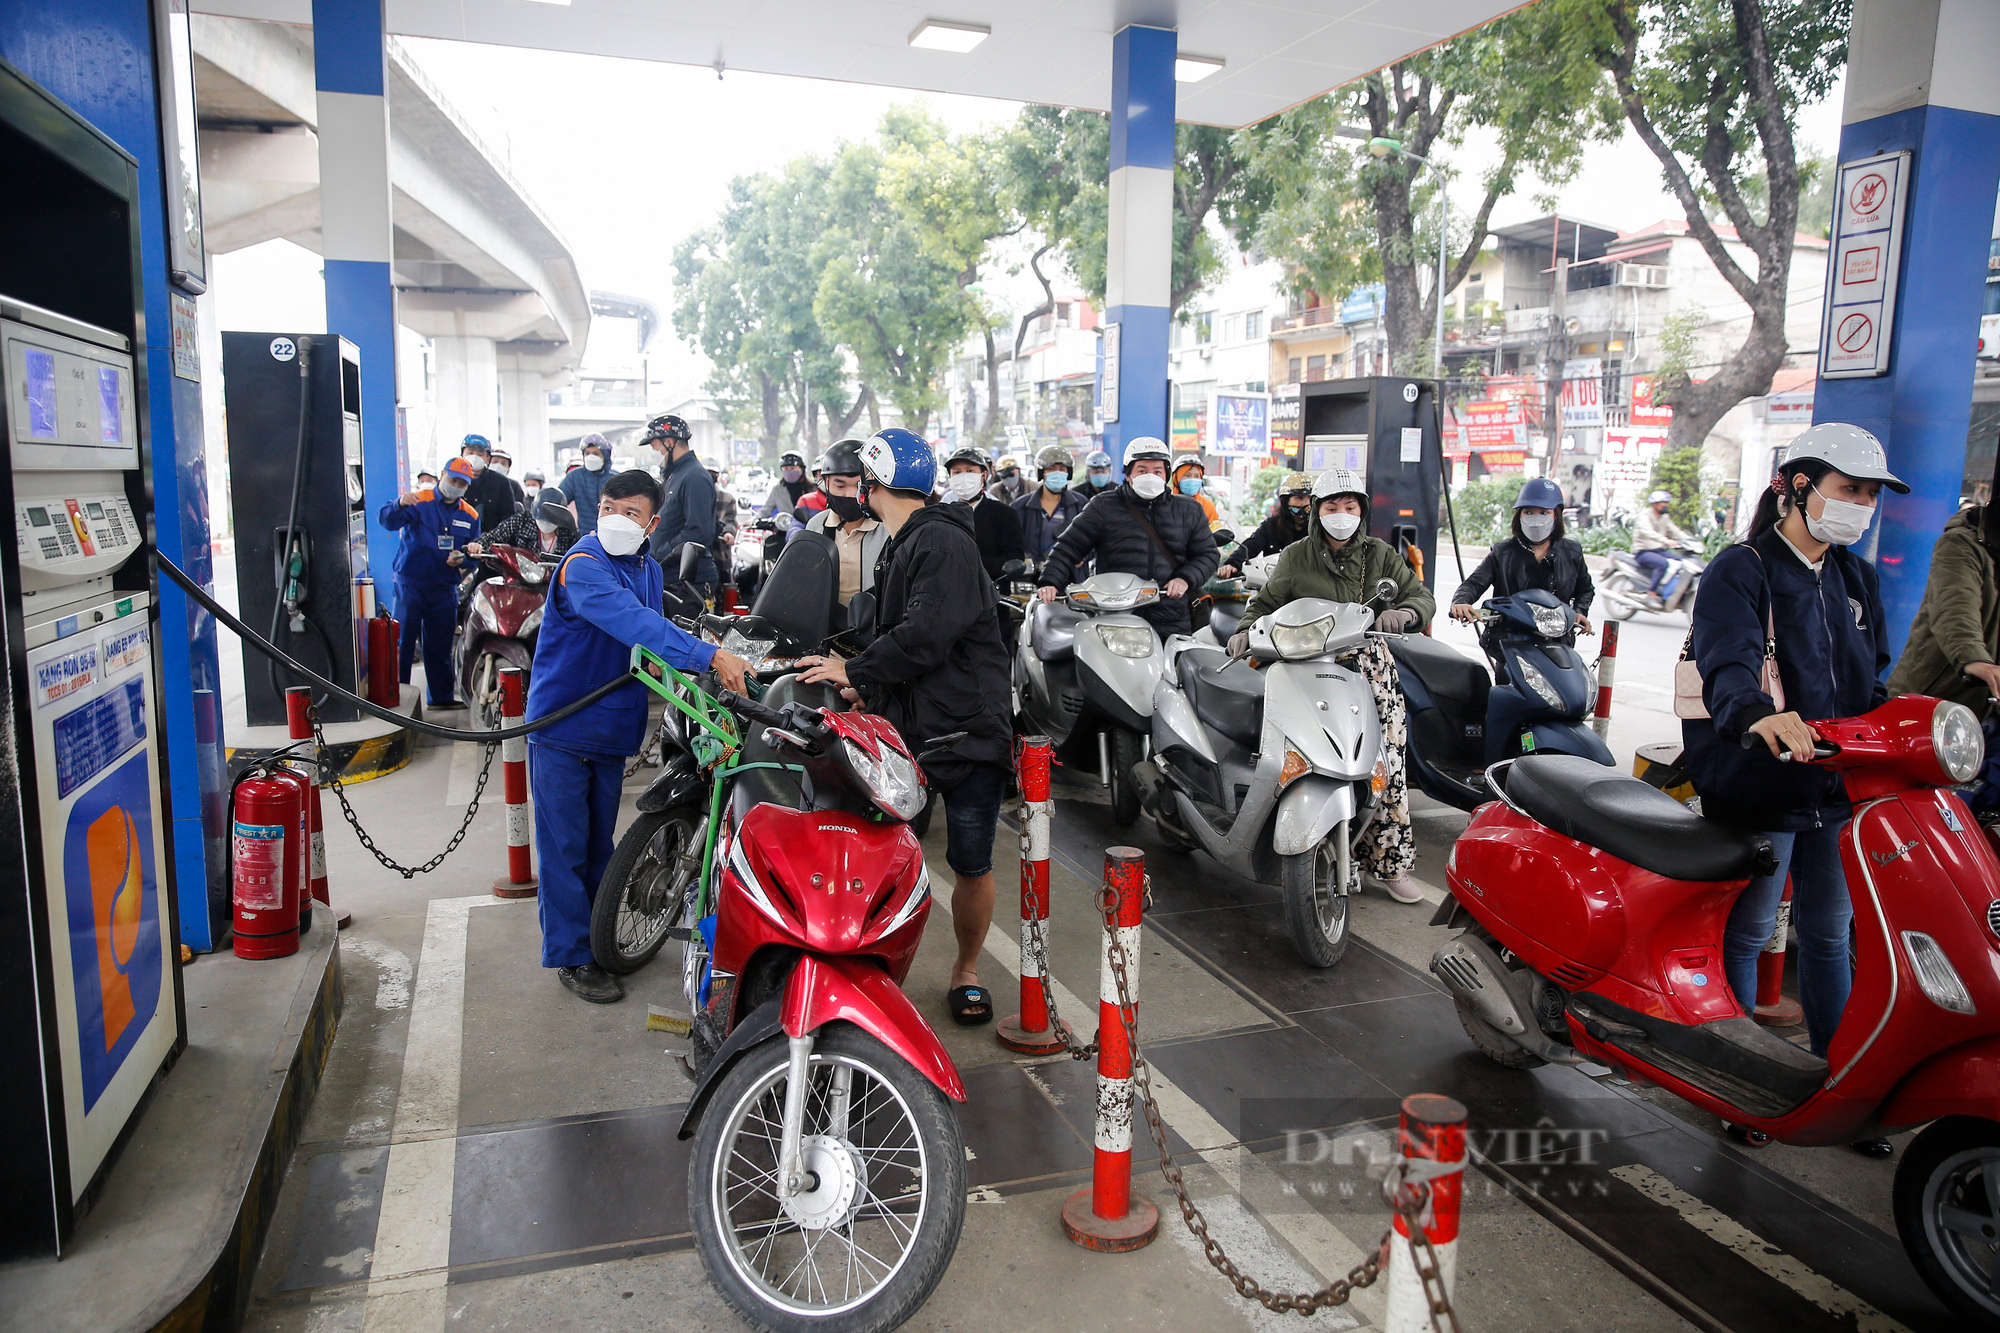 Các cây xăng tại Hà Nội đông nghịt, người dân đi làm muộn vì chờ đổ xăng - Ảnh 3.